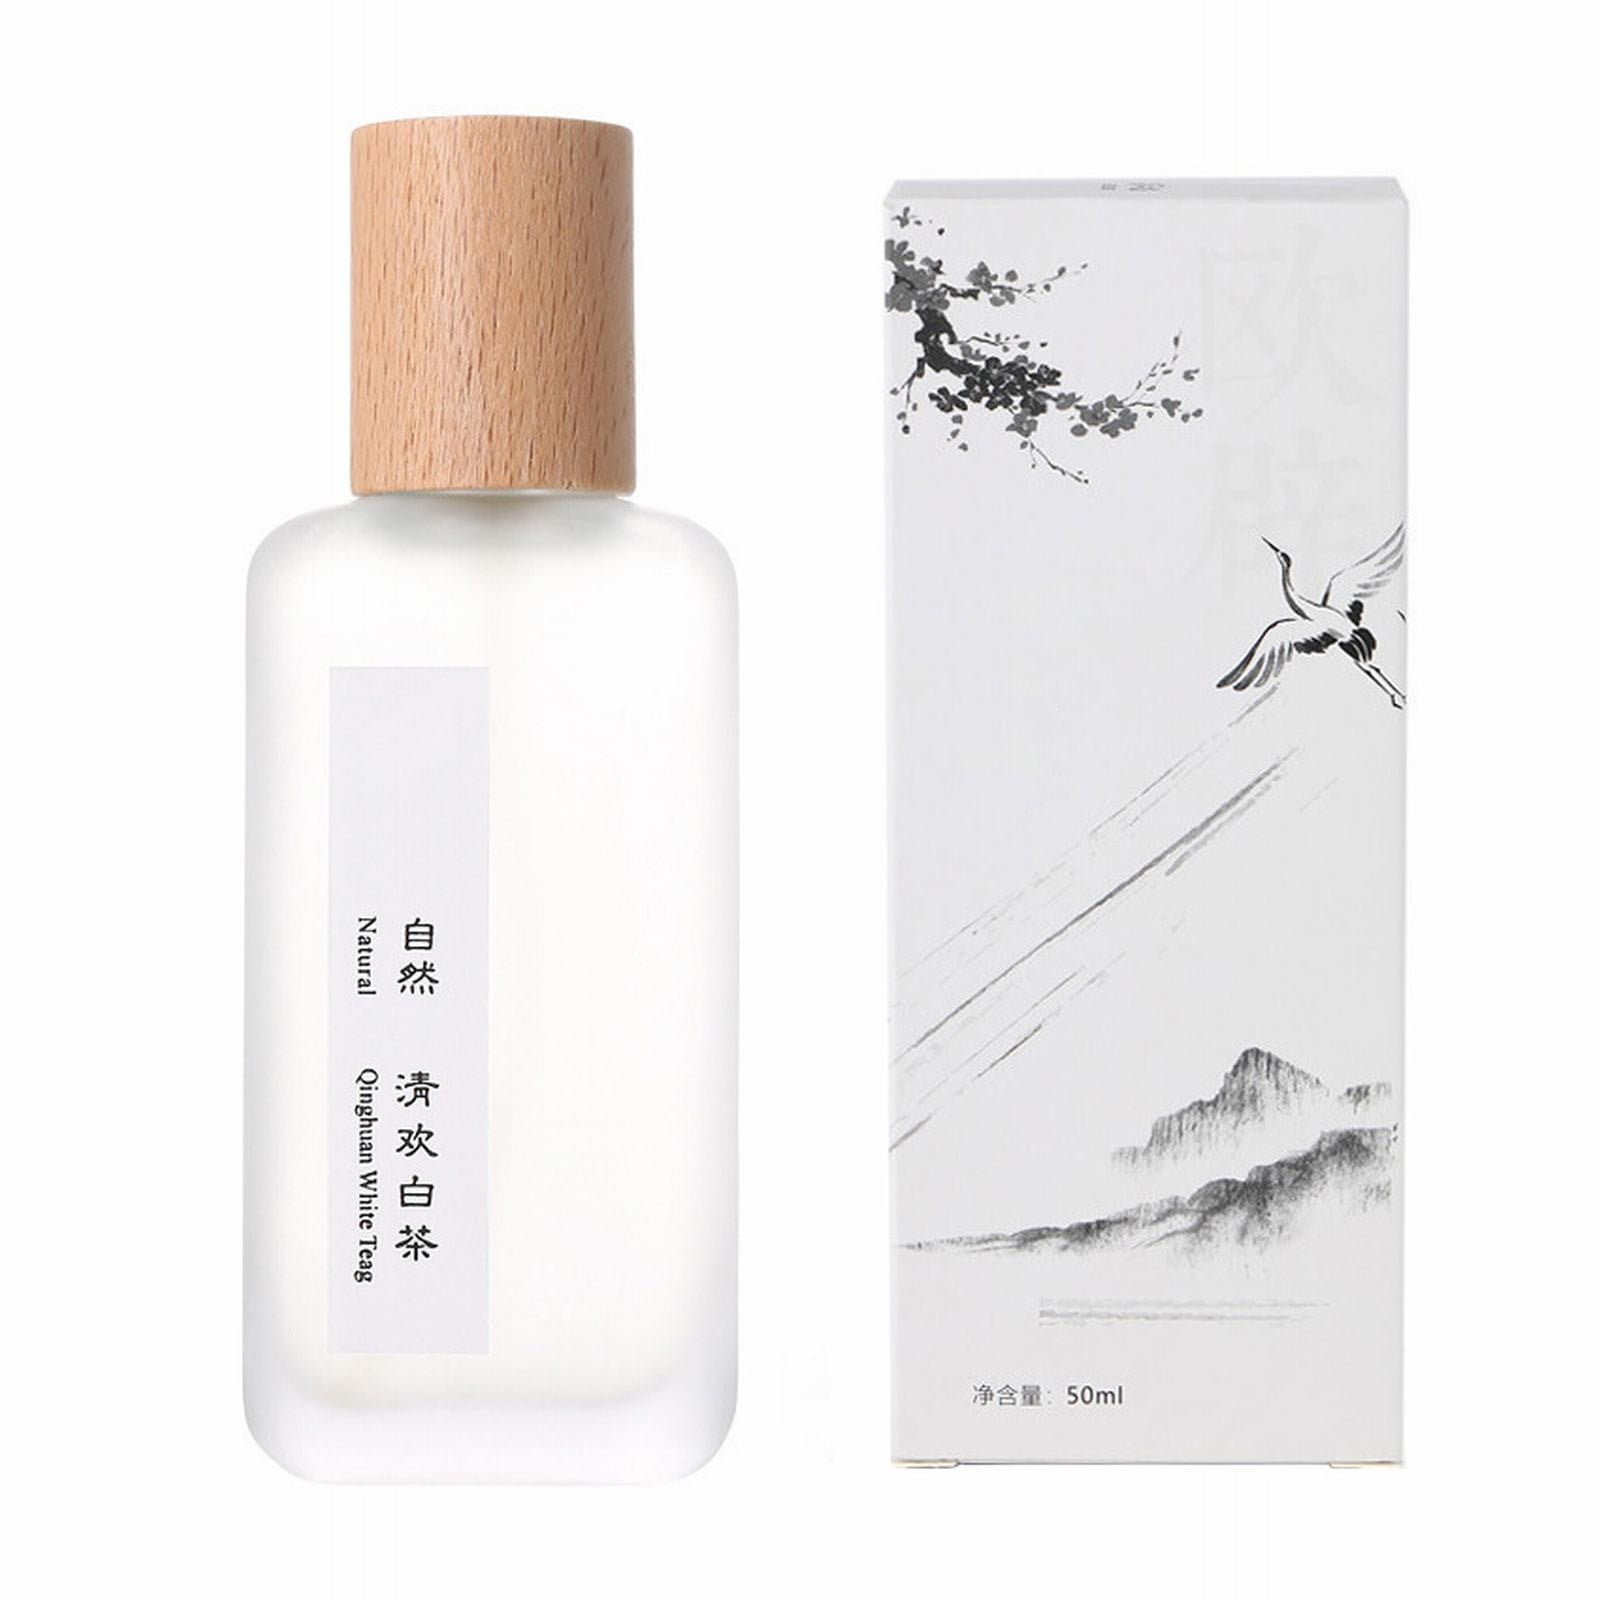 zttd qinghuan white tea lady perfume lasting fragrance fragrance perfume  lasting fragrance creative perfume 50ml 